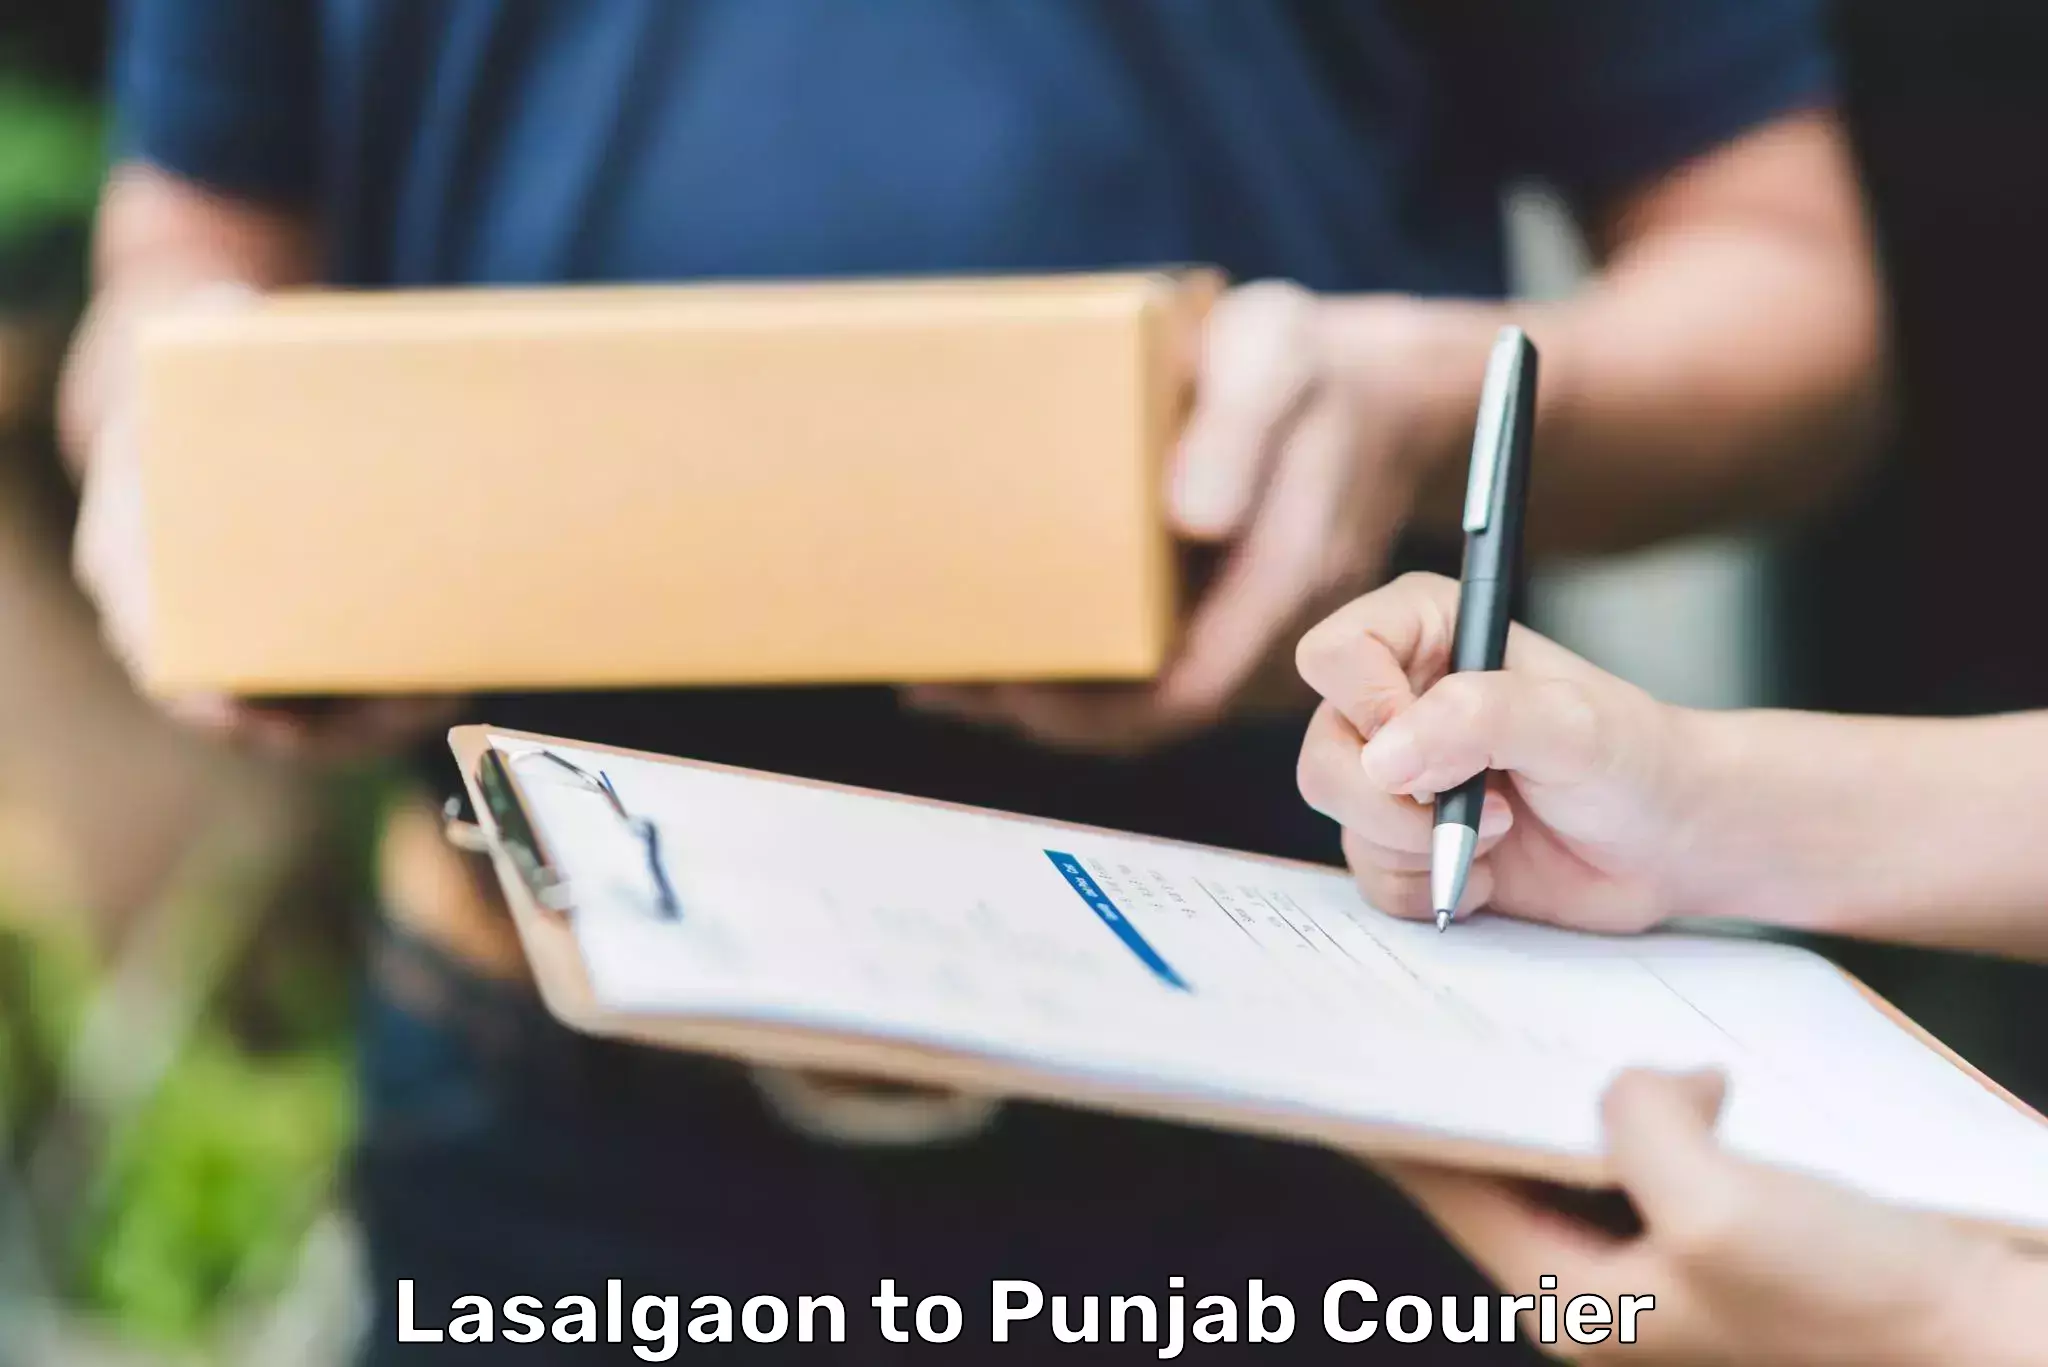 Modern courier technology Lasalgaon to Punjab